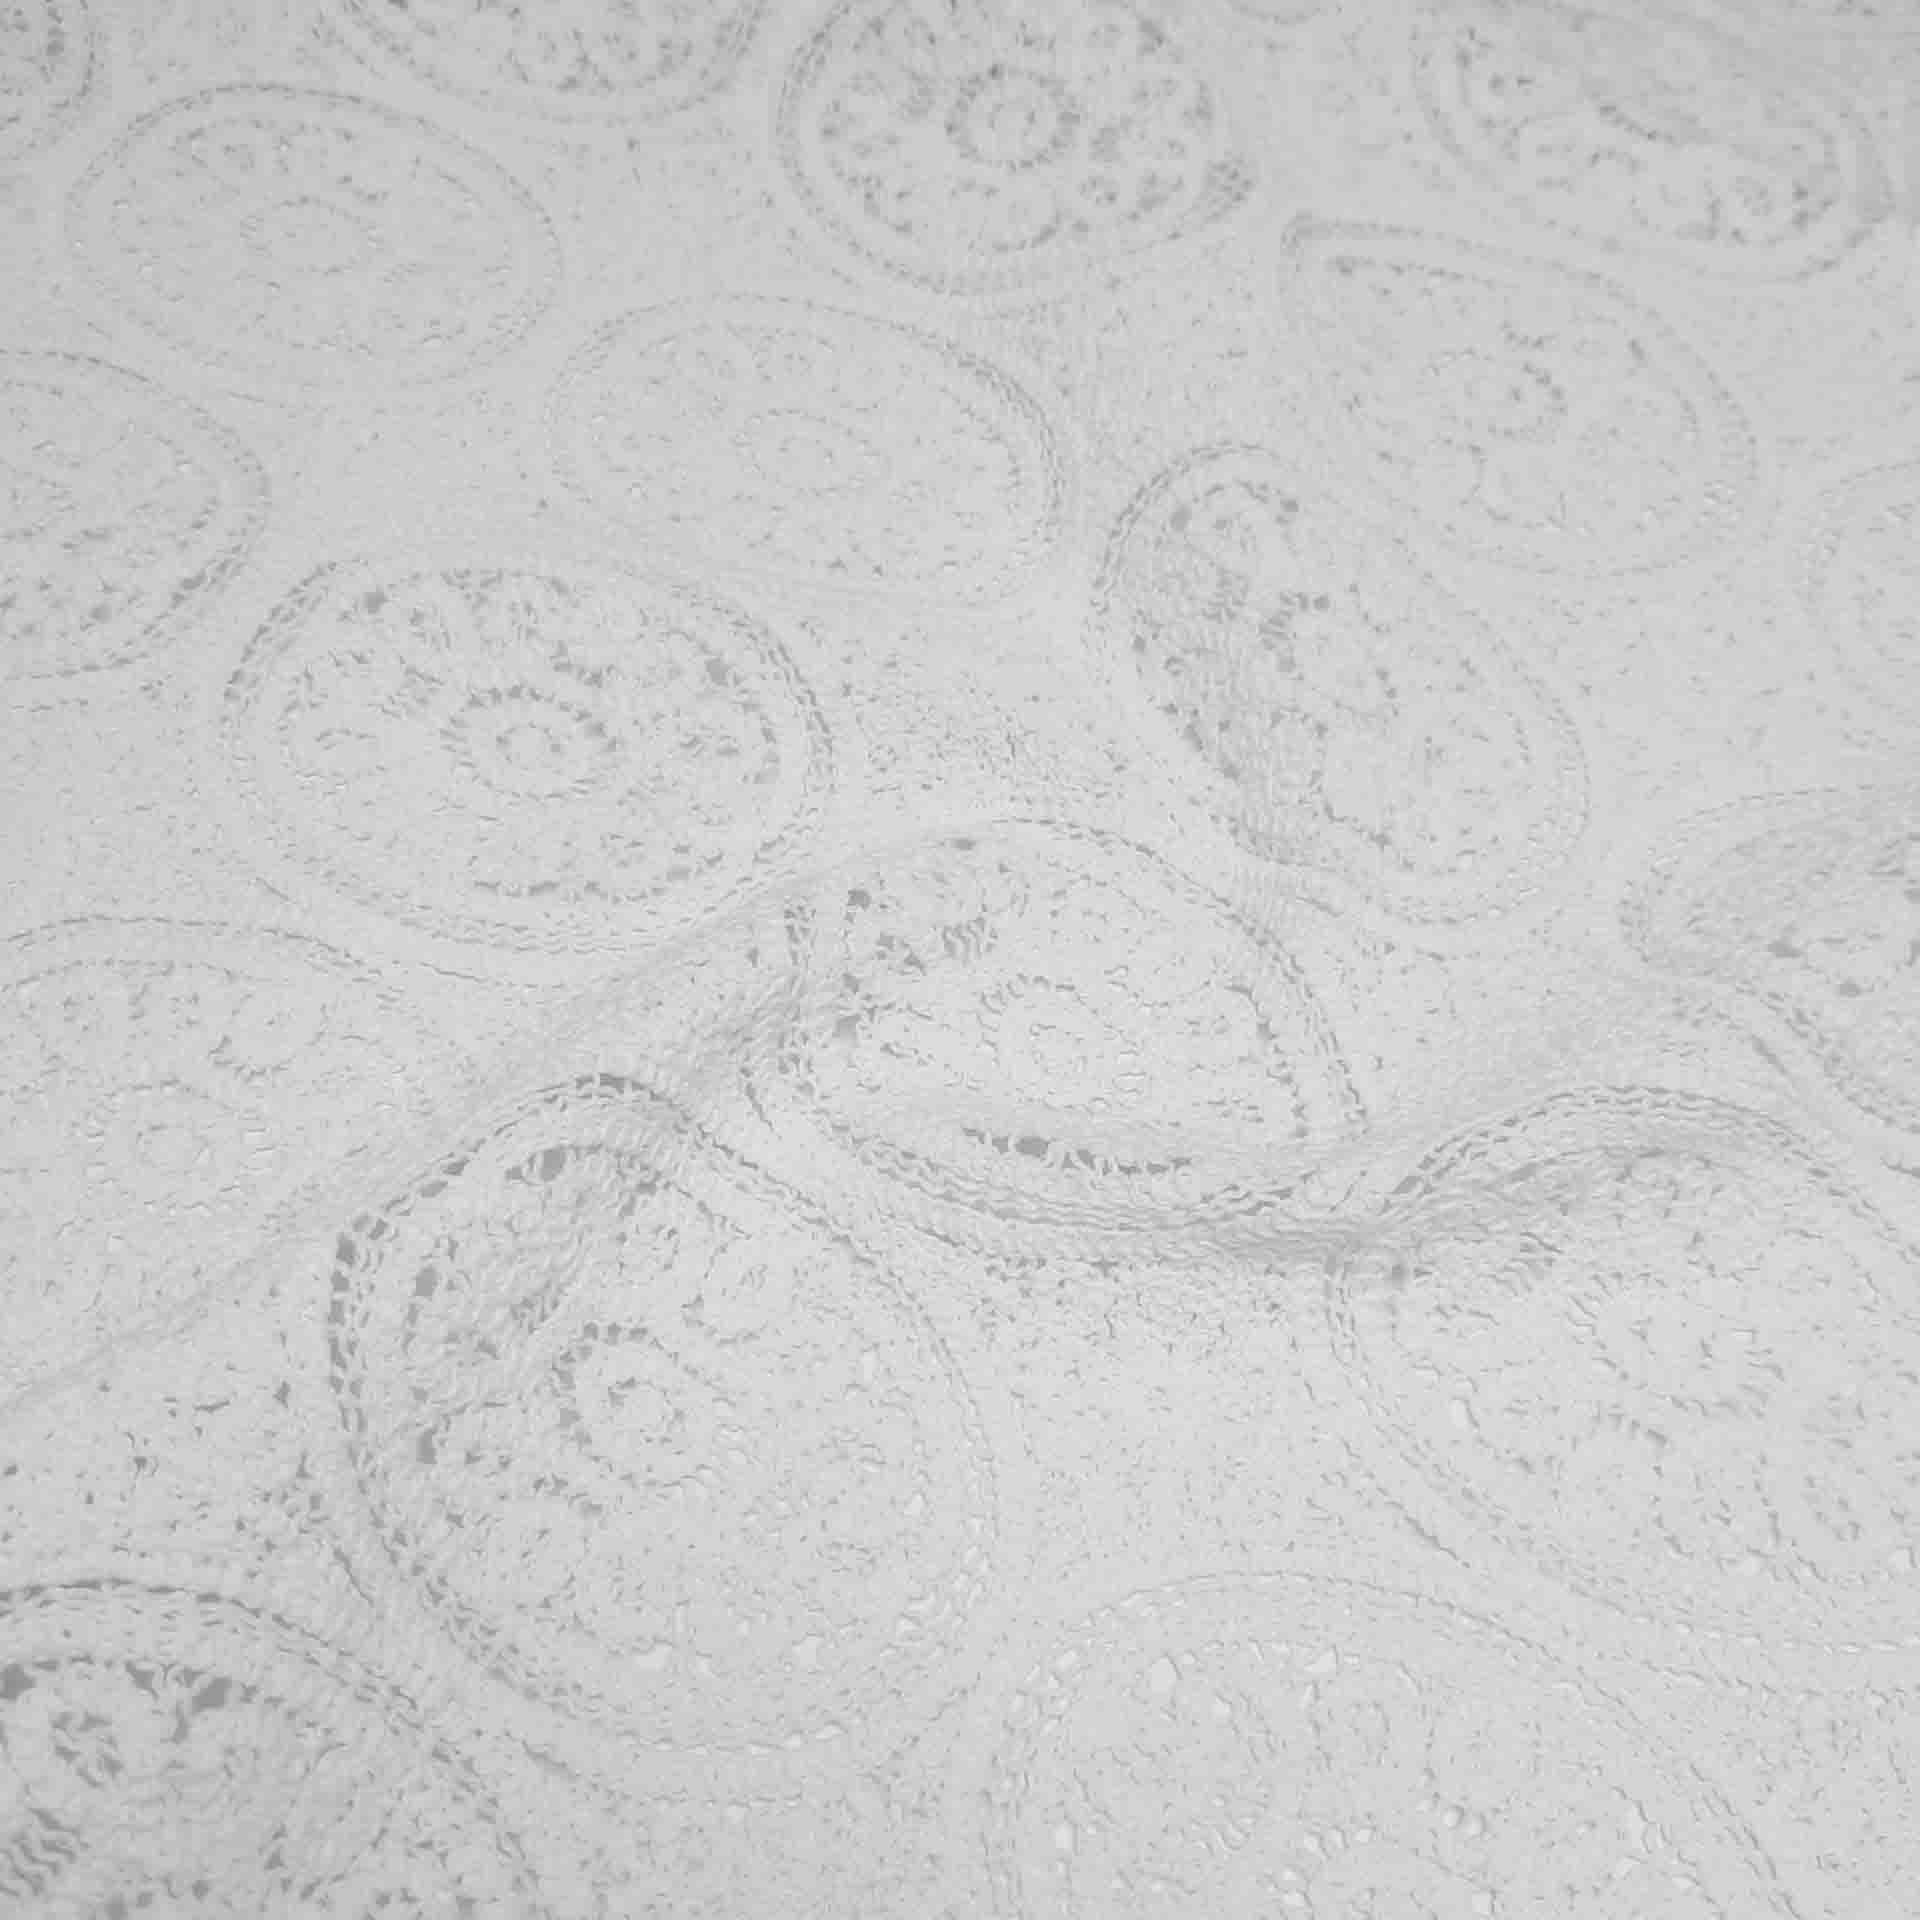 پارچه گیپور قلاب بافی رنگ سفید 